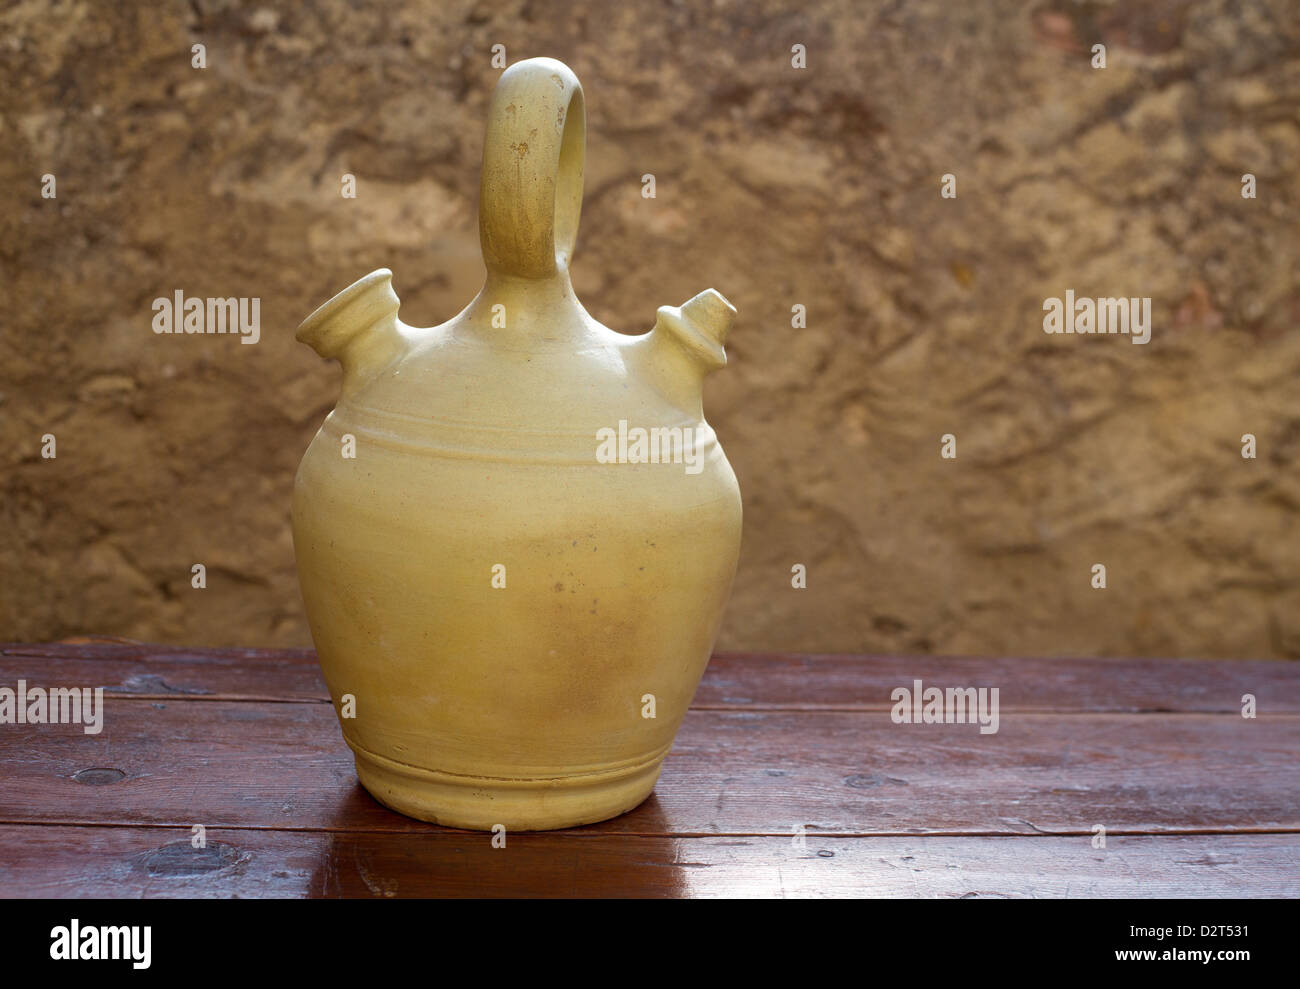 Botijo español: la tradición y frescura en tu hogar con este antiguo  recipiente de barro